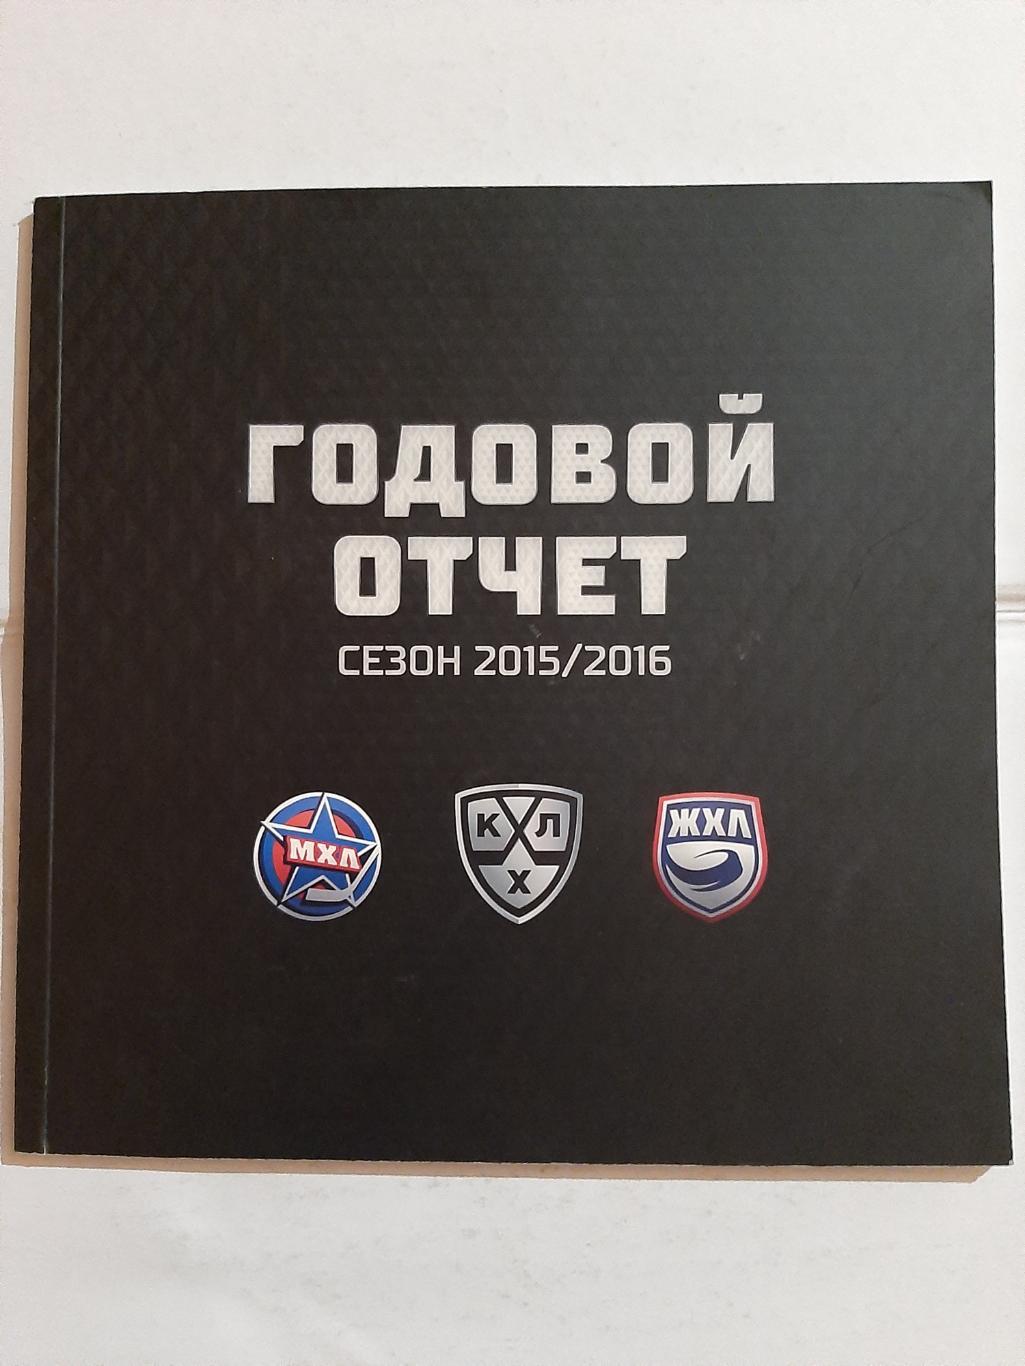 Годовой отчёт МХЛ КХЛ ЖХЛ сезон 2015/2016